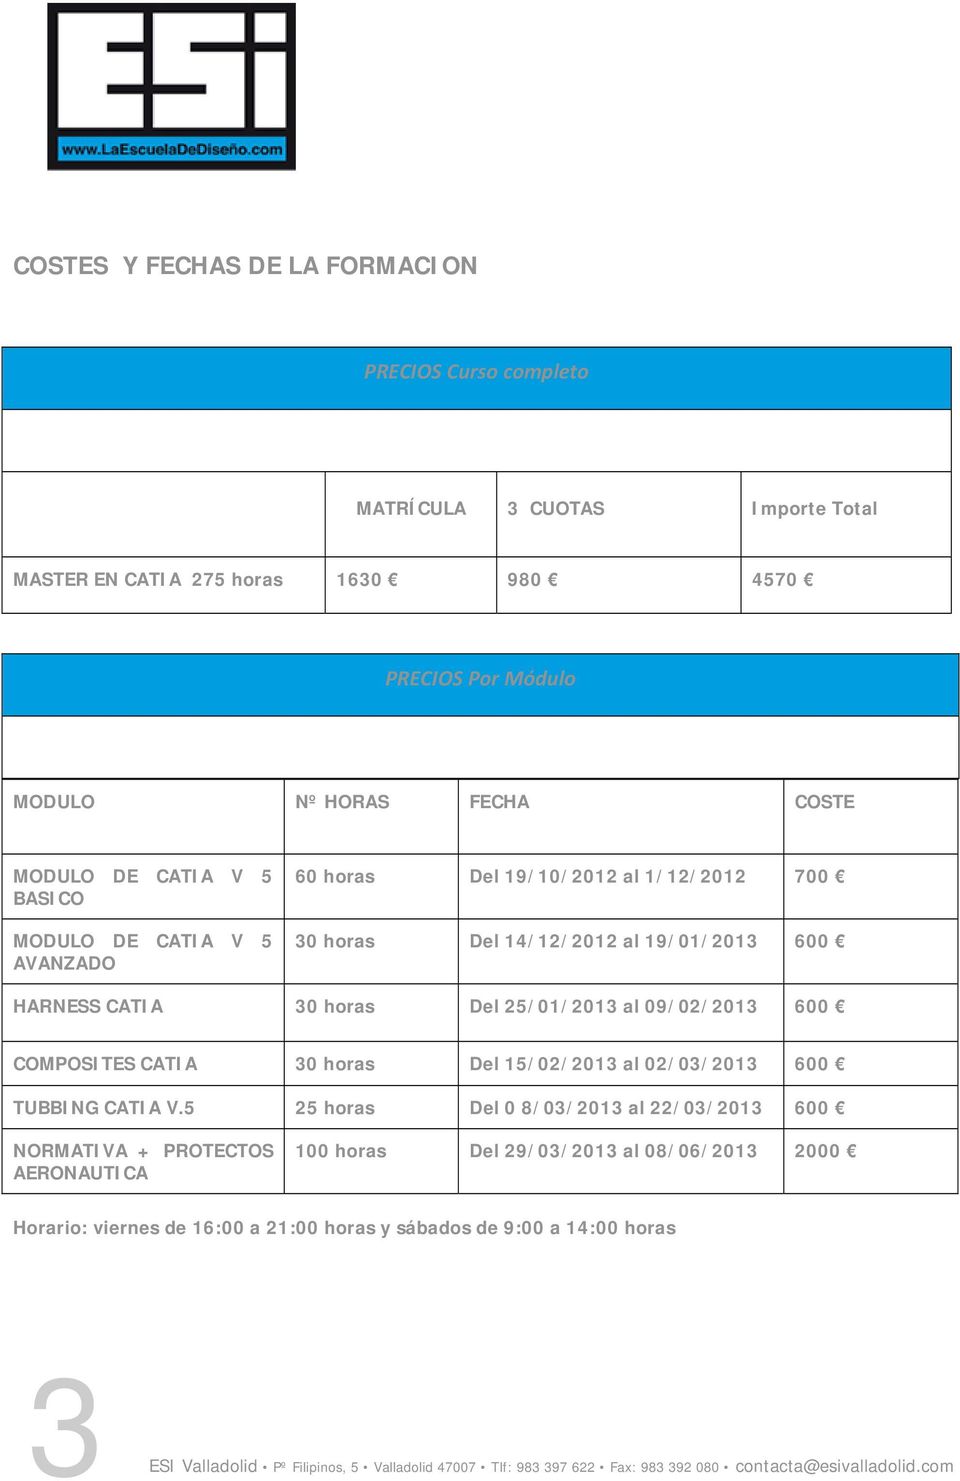 HARNESS CATIA 30 horas Del 25/01/2013 al 09/02/2013 600 COMPOSITES CATIA 30 horas Del 15/02/2013 al 02/03/2013 600 TUBBING CATIA V.